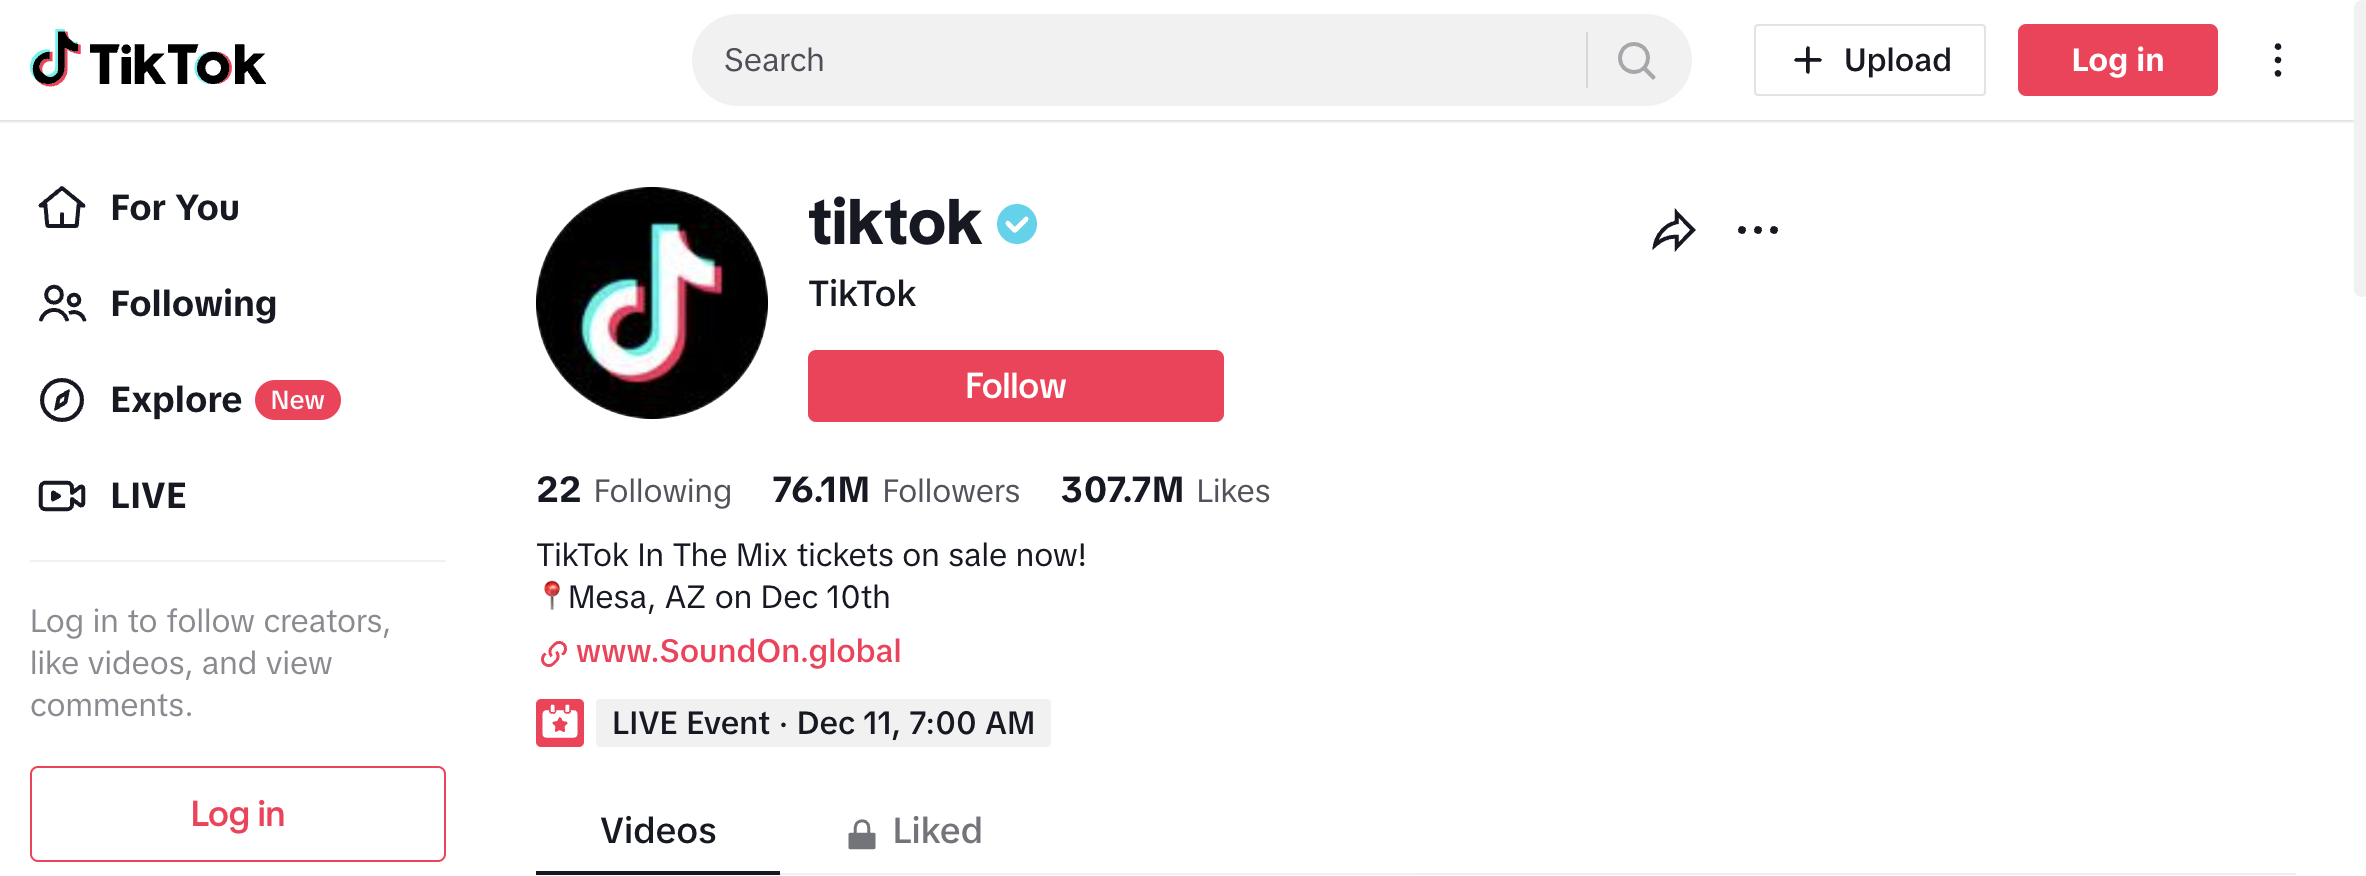 TikTokのTikTok公式アカウント